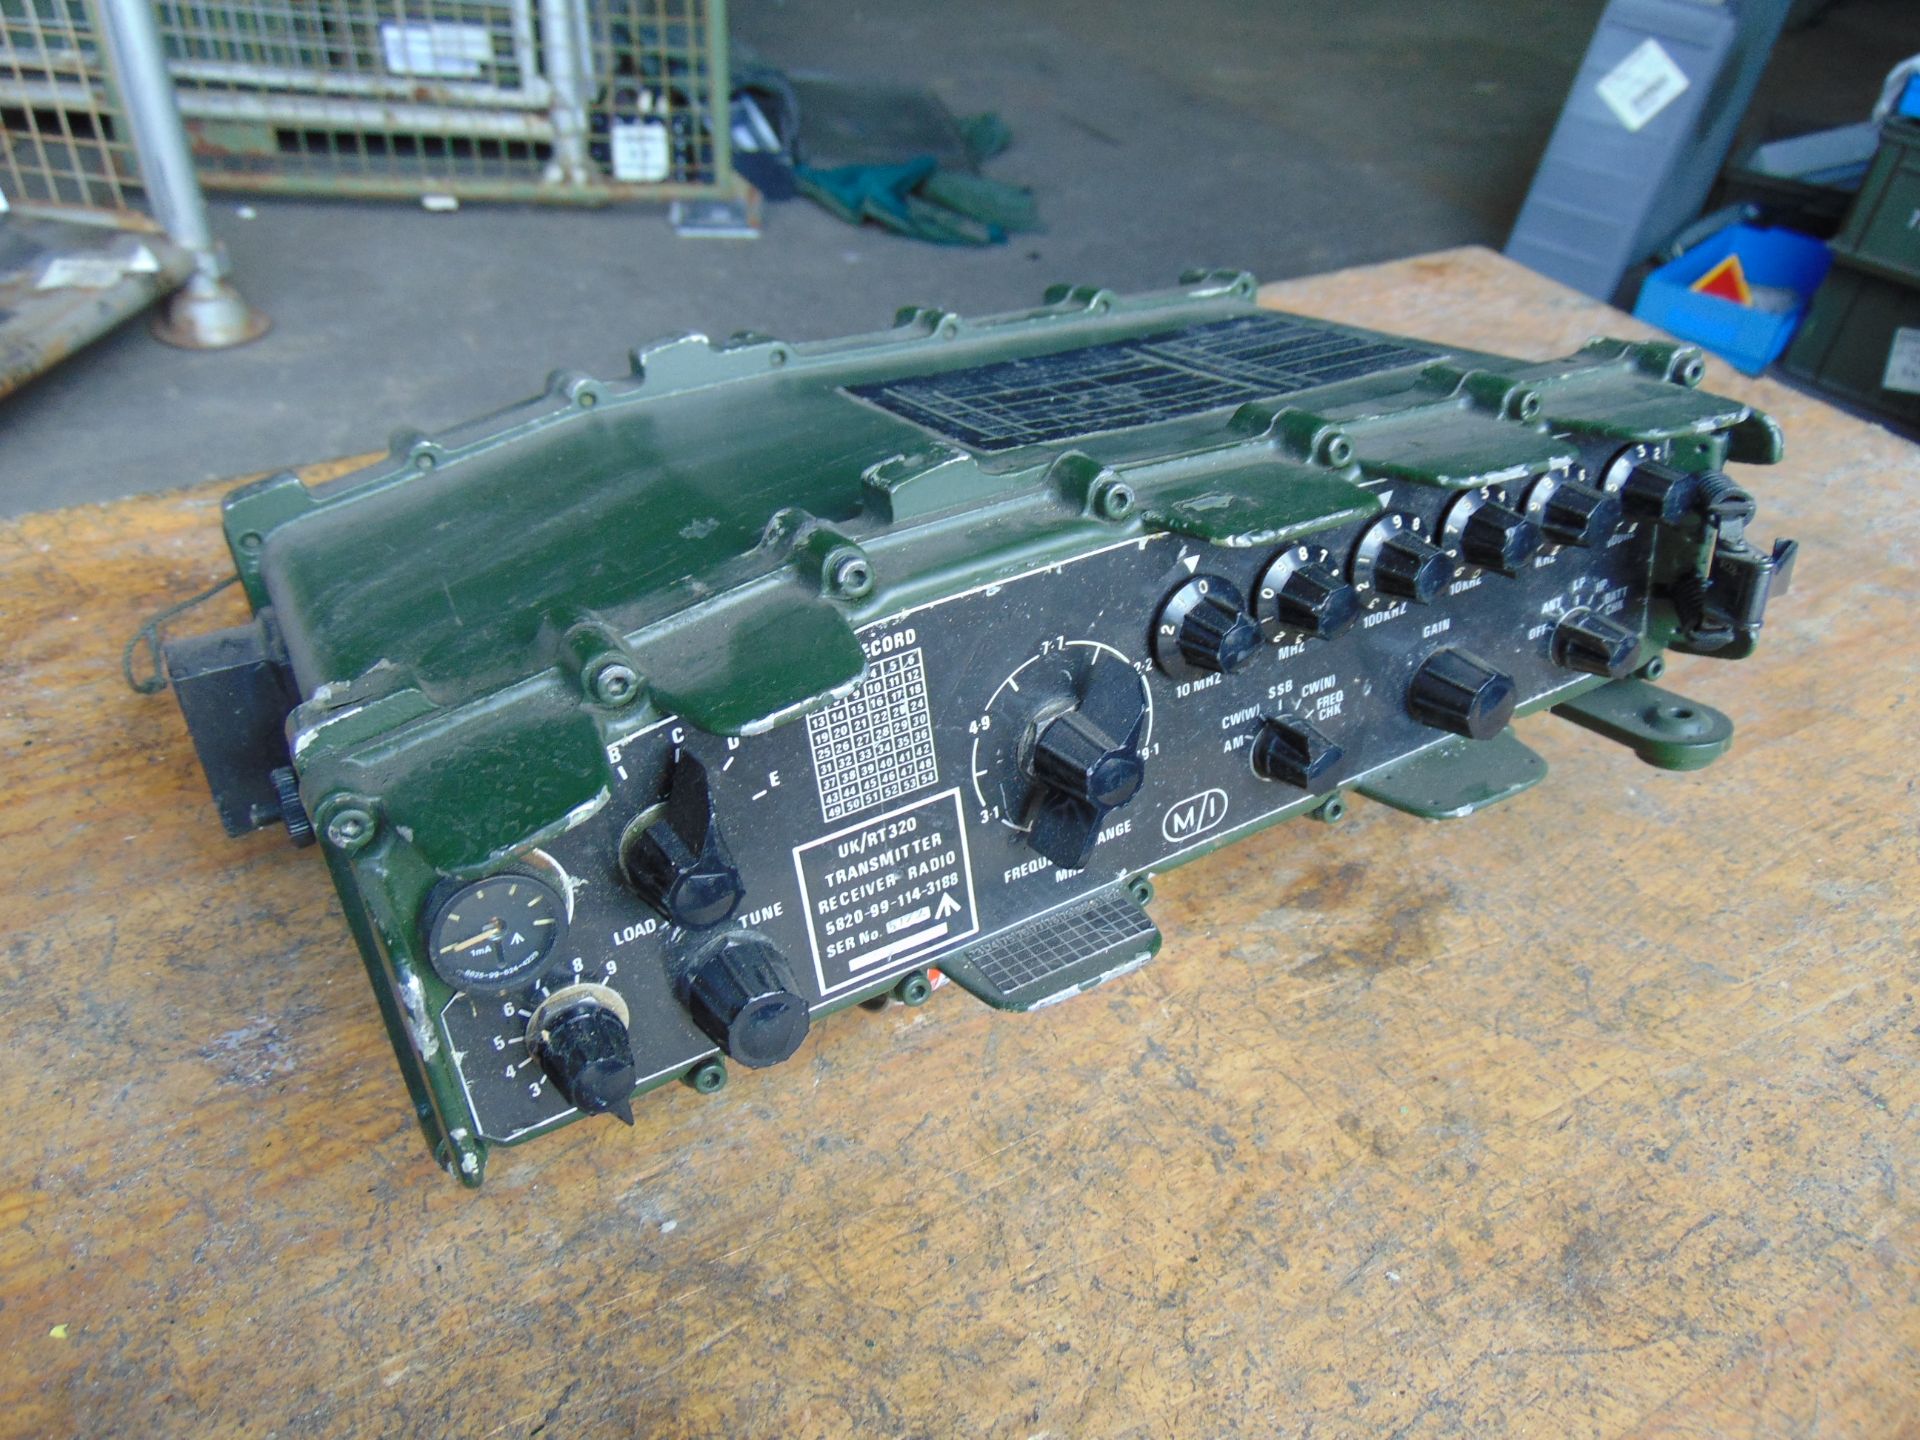 Clansman UK RT/320 HF British Army Transmitter Receiver - Image 5 of 5